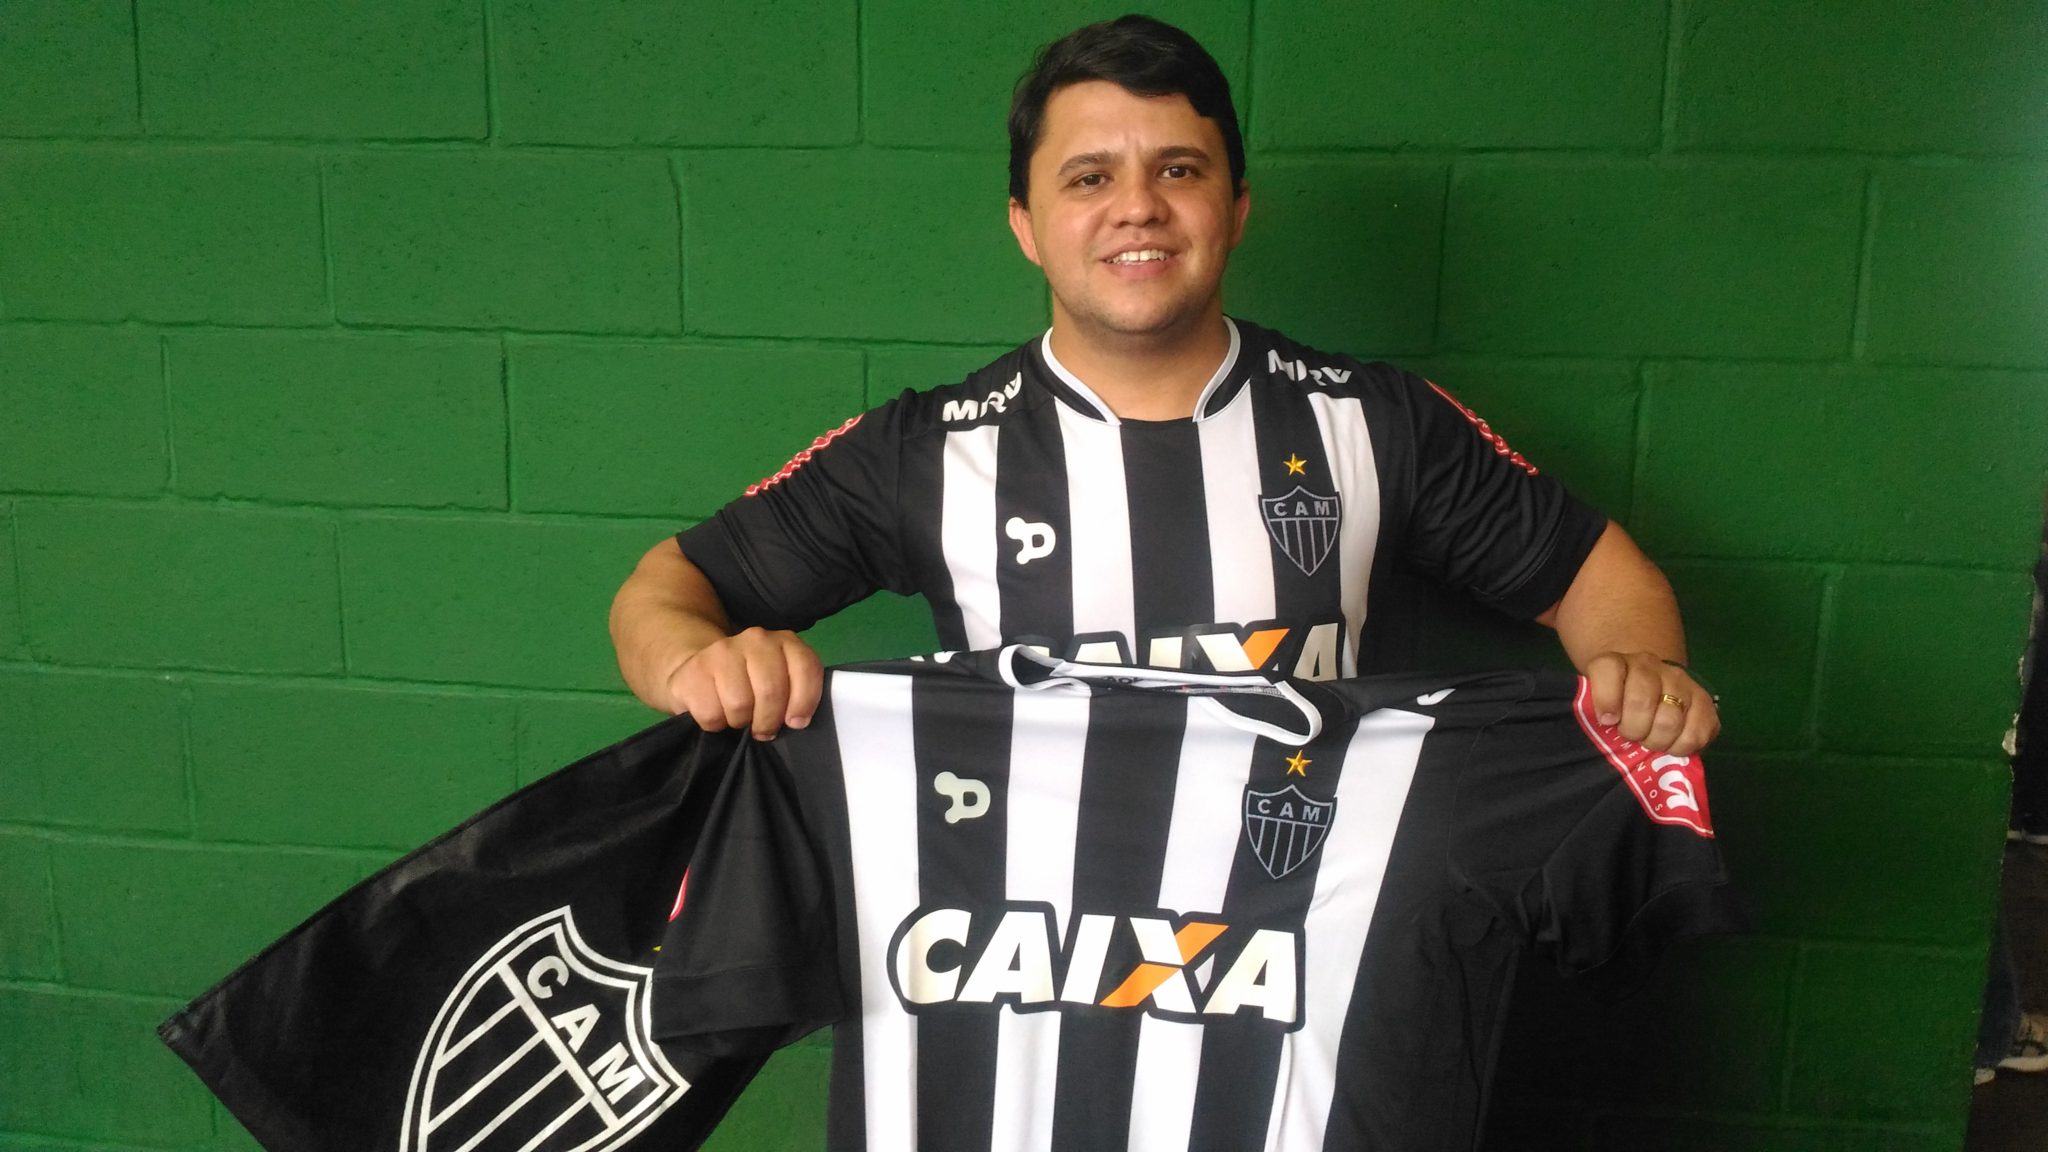 P 20170326 170047 - Sócios Galo Na Veia Preto recebem camisas da promoção #LibertadoresEuVou